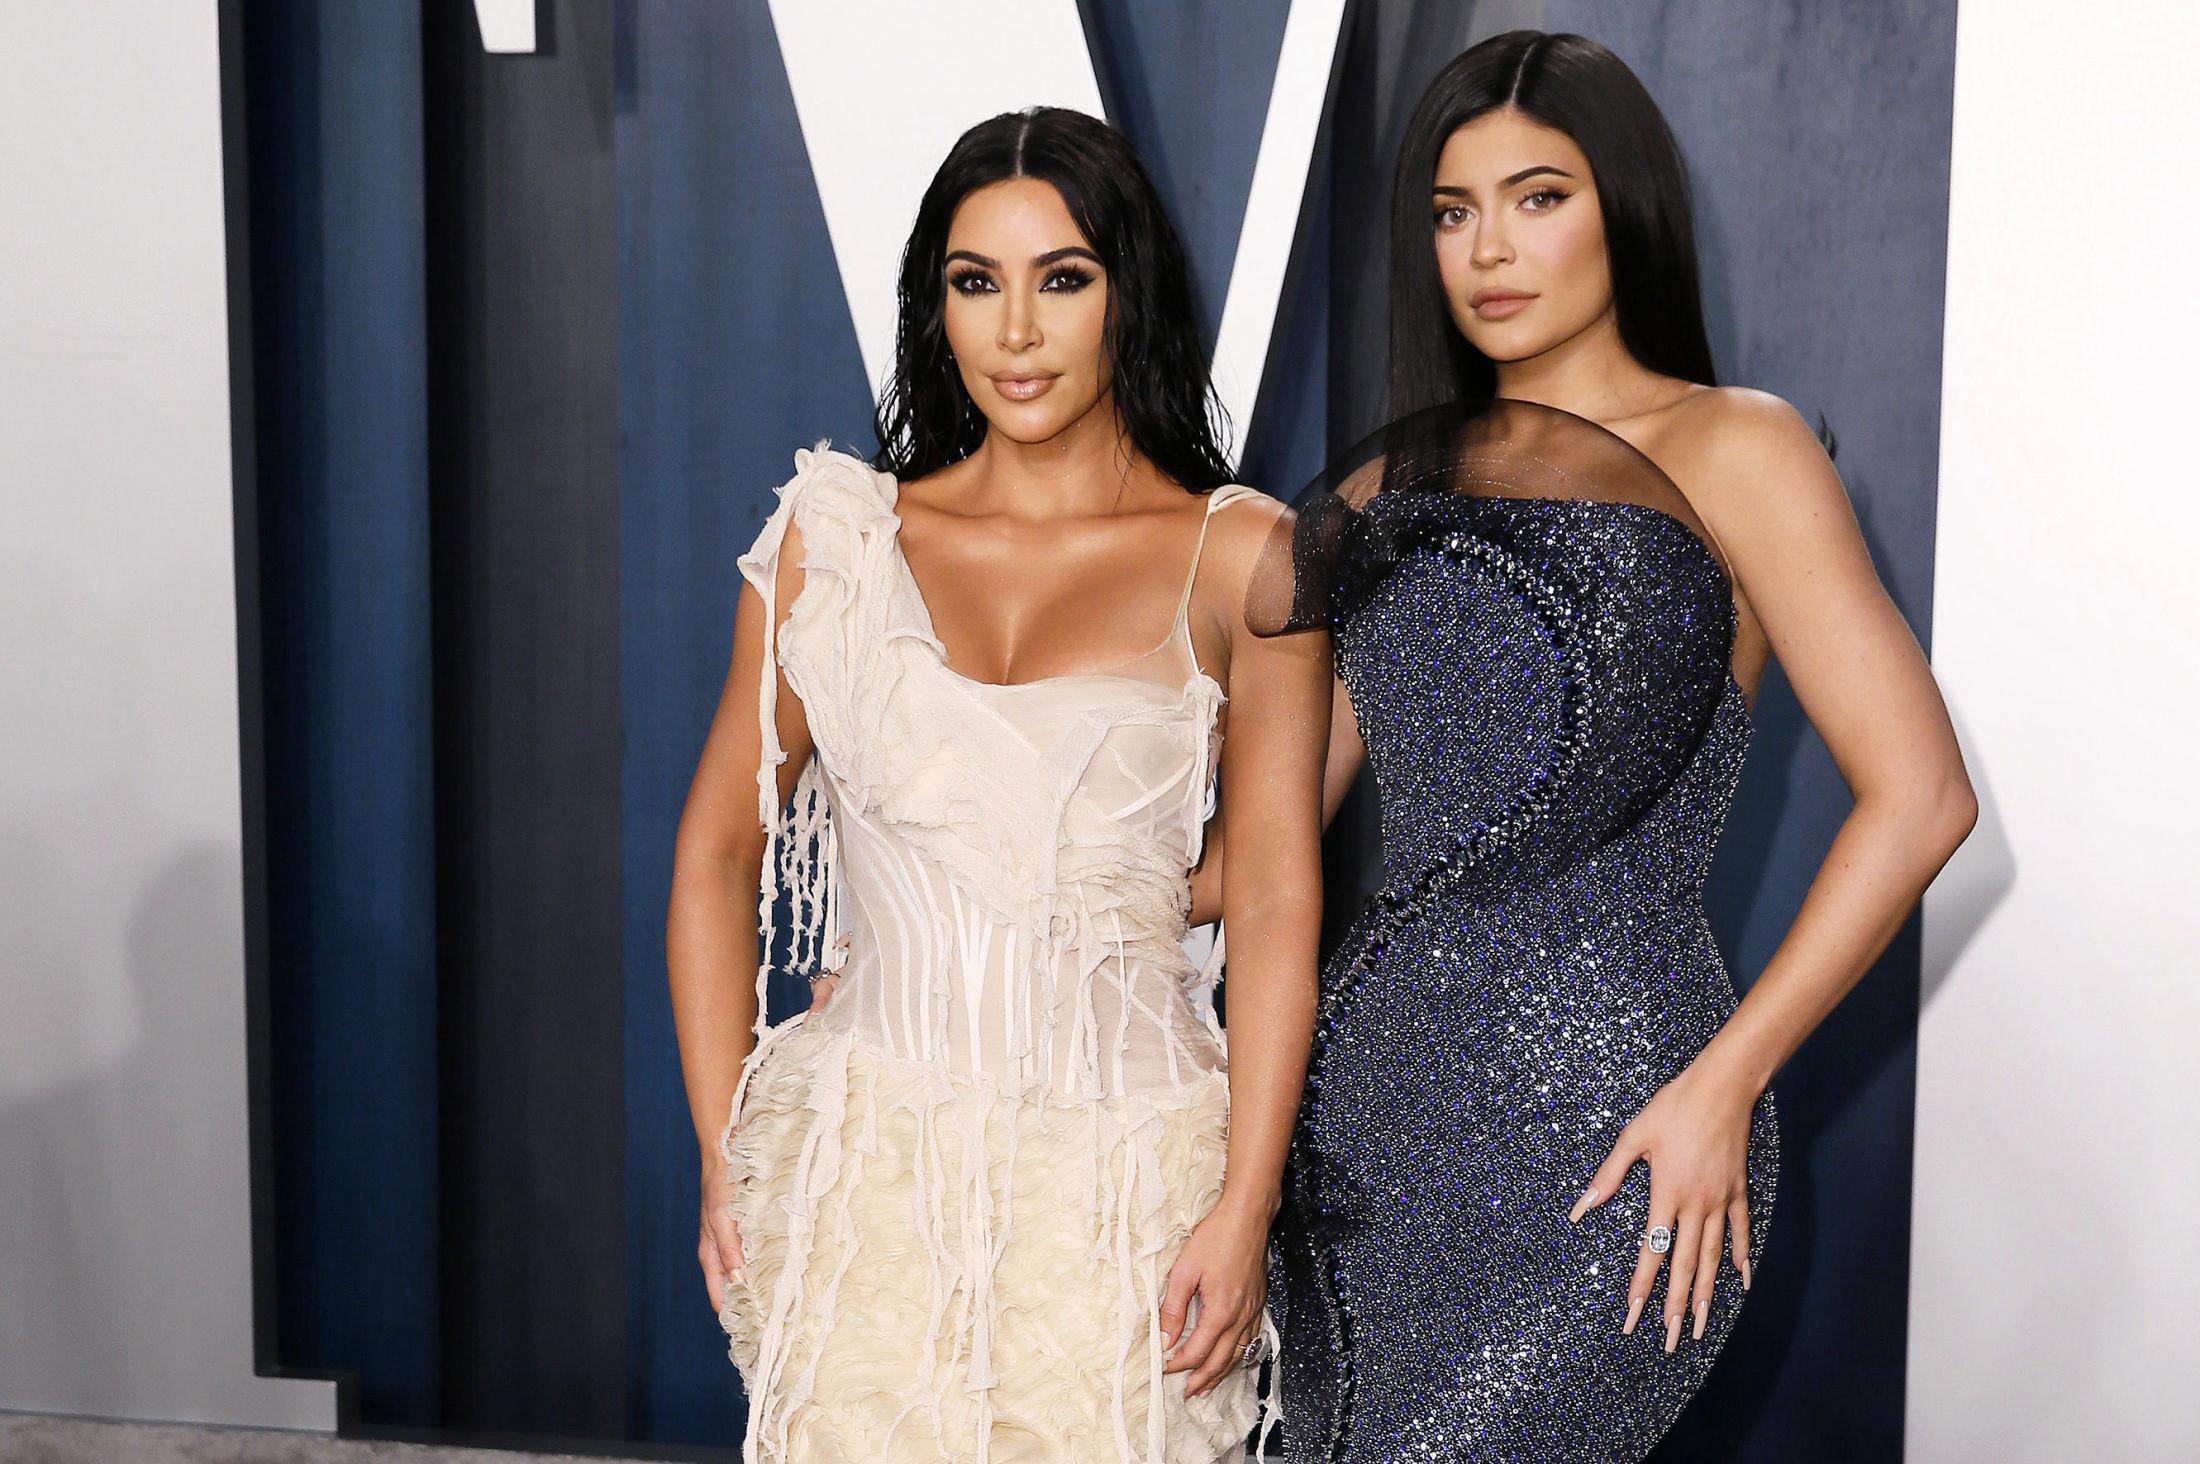 STÅR FOR REKORDER: Kim Kardashian og Kylie Jenner har hatt flere Instagram-rekorder i appens levetid. Foto: Danny Moloshok/Reuters.